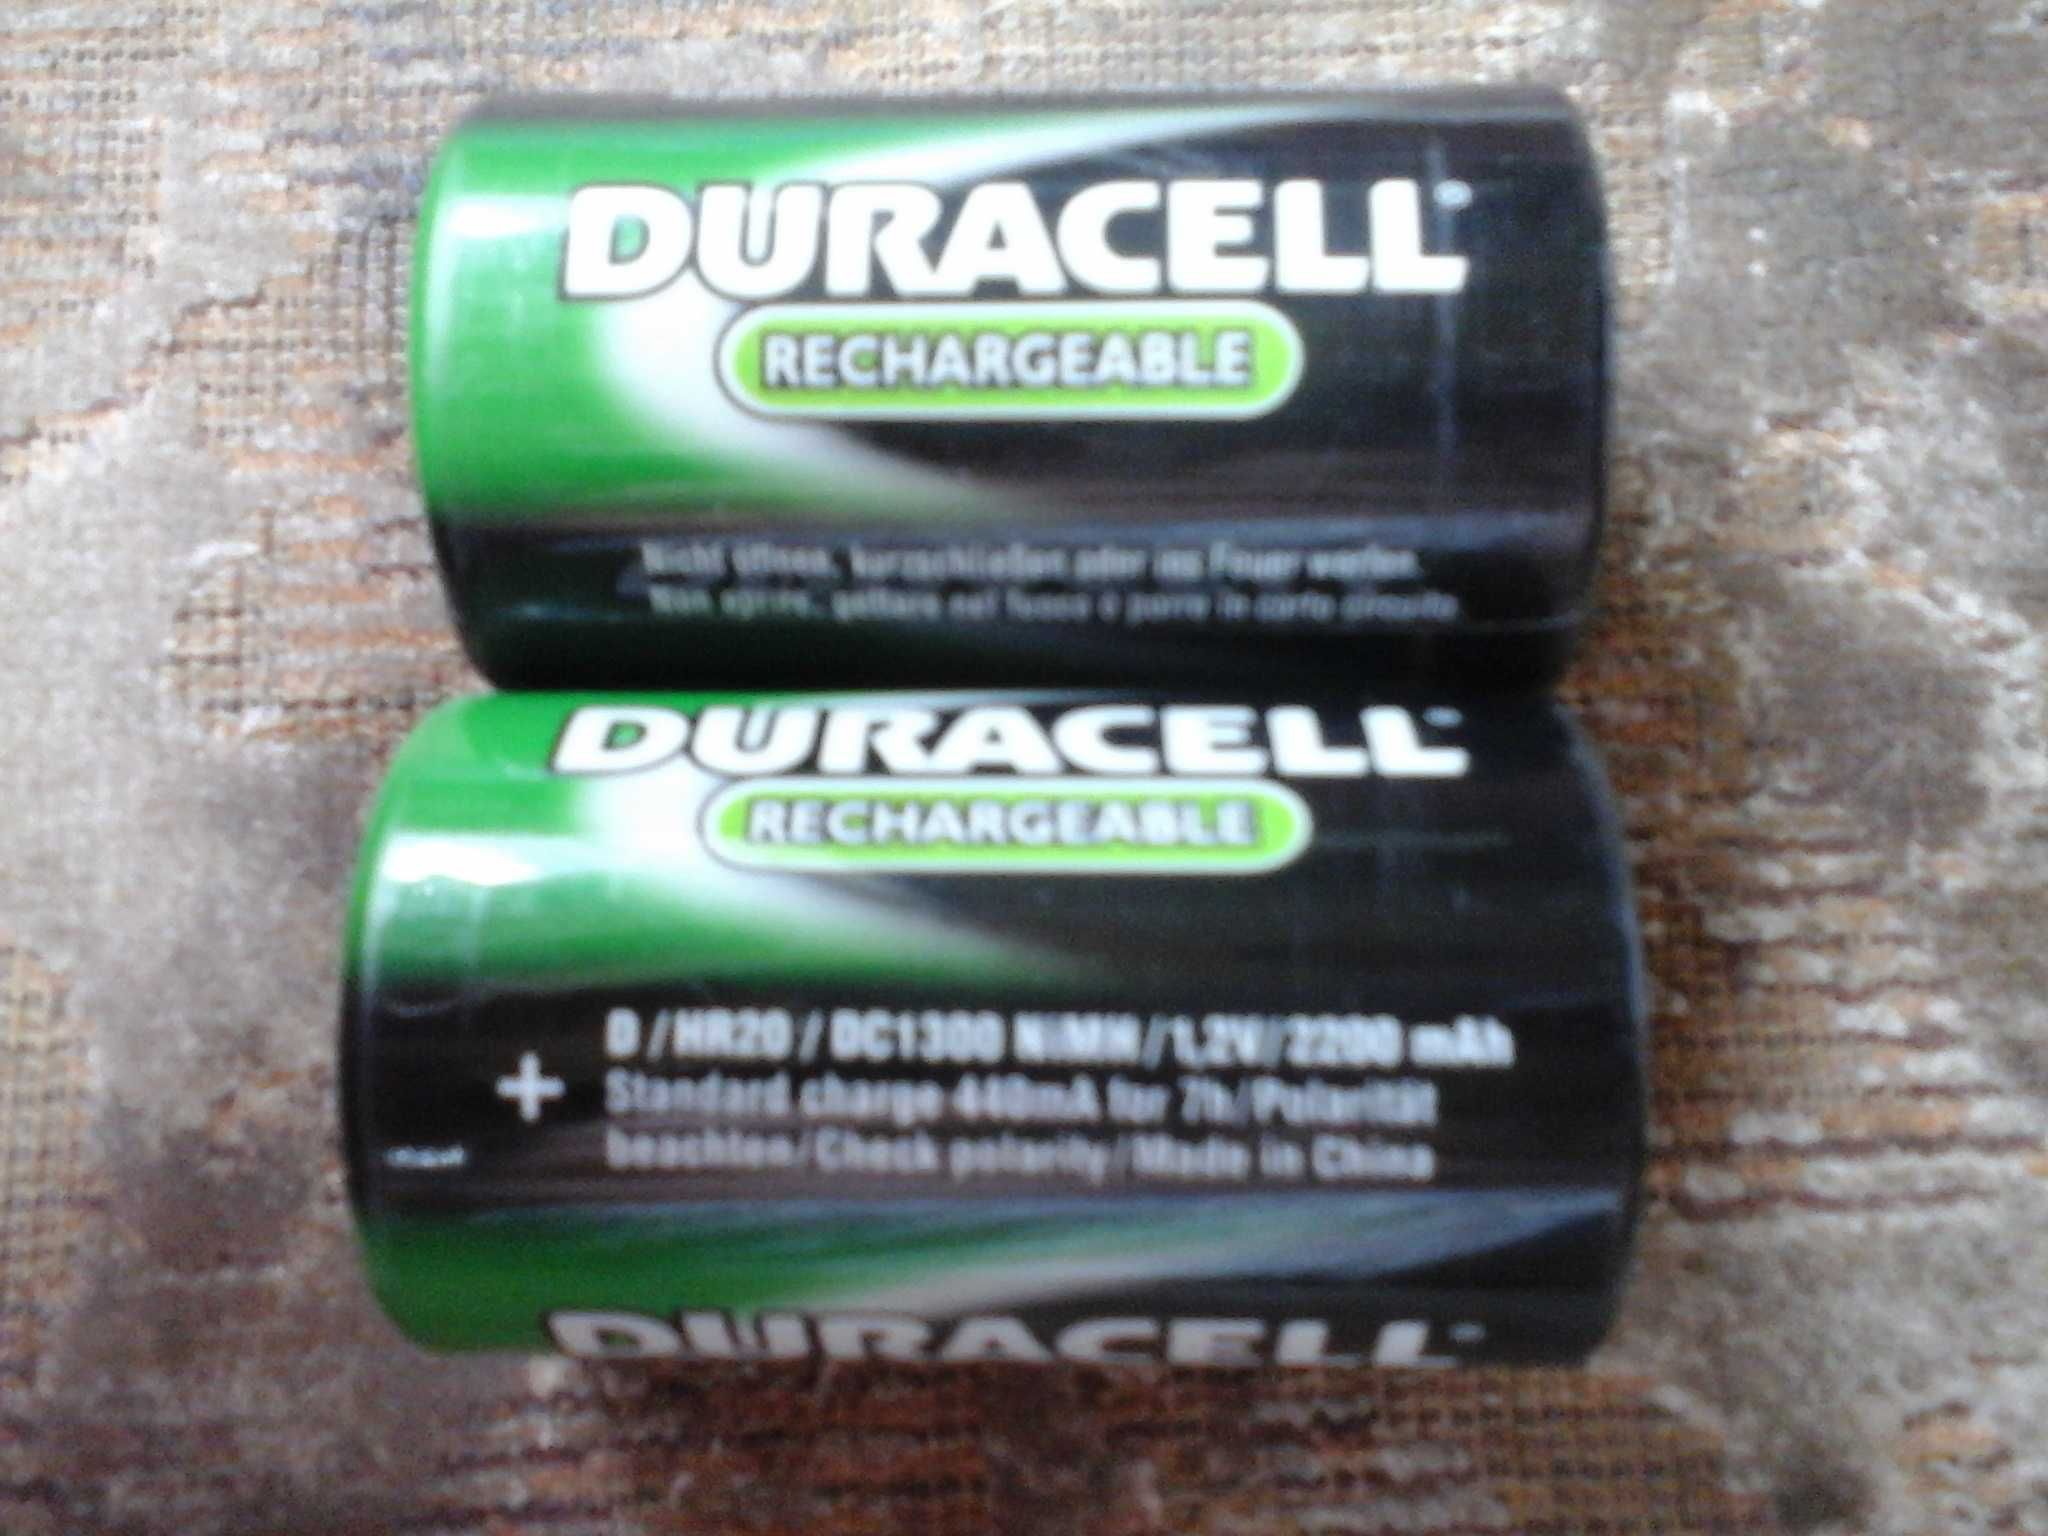 Продам аккумуляторы - батарейку NI MH большие и NI CD + NI MH палец